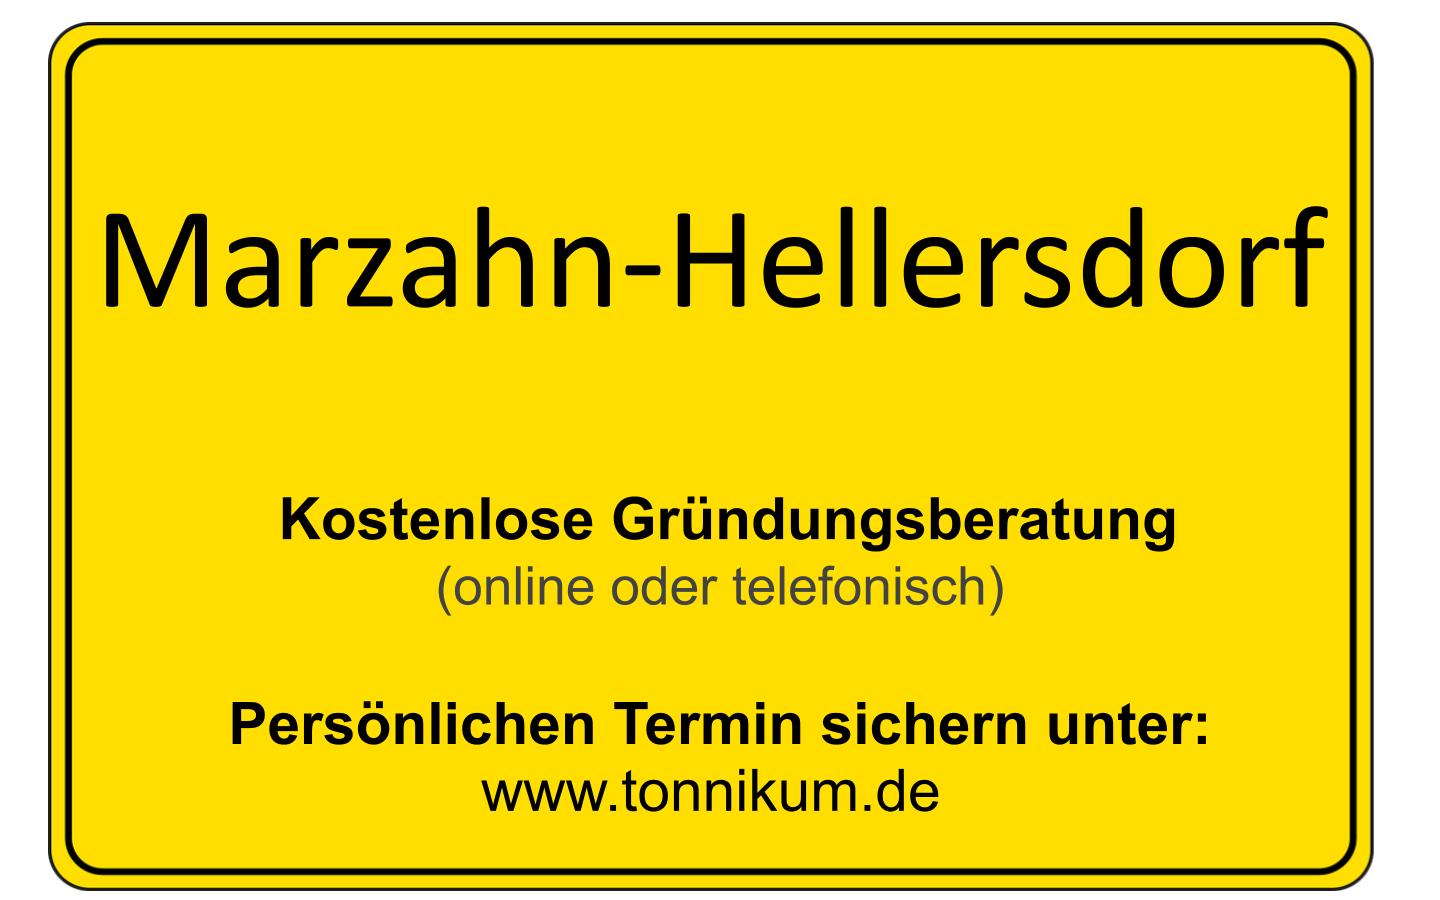 Marzahn-Hellersdorf Beratung Existenzgründung  ⇒ kostenloses Erstgespräch